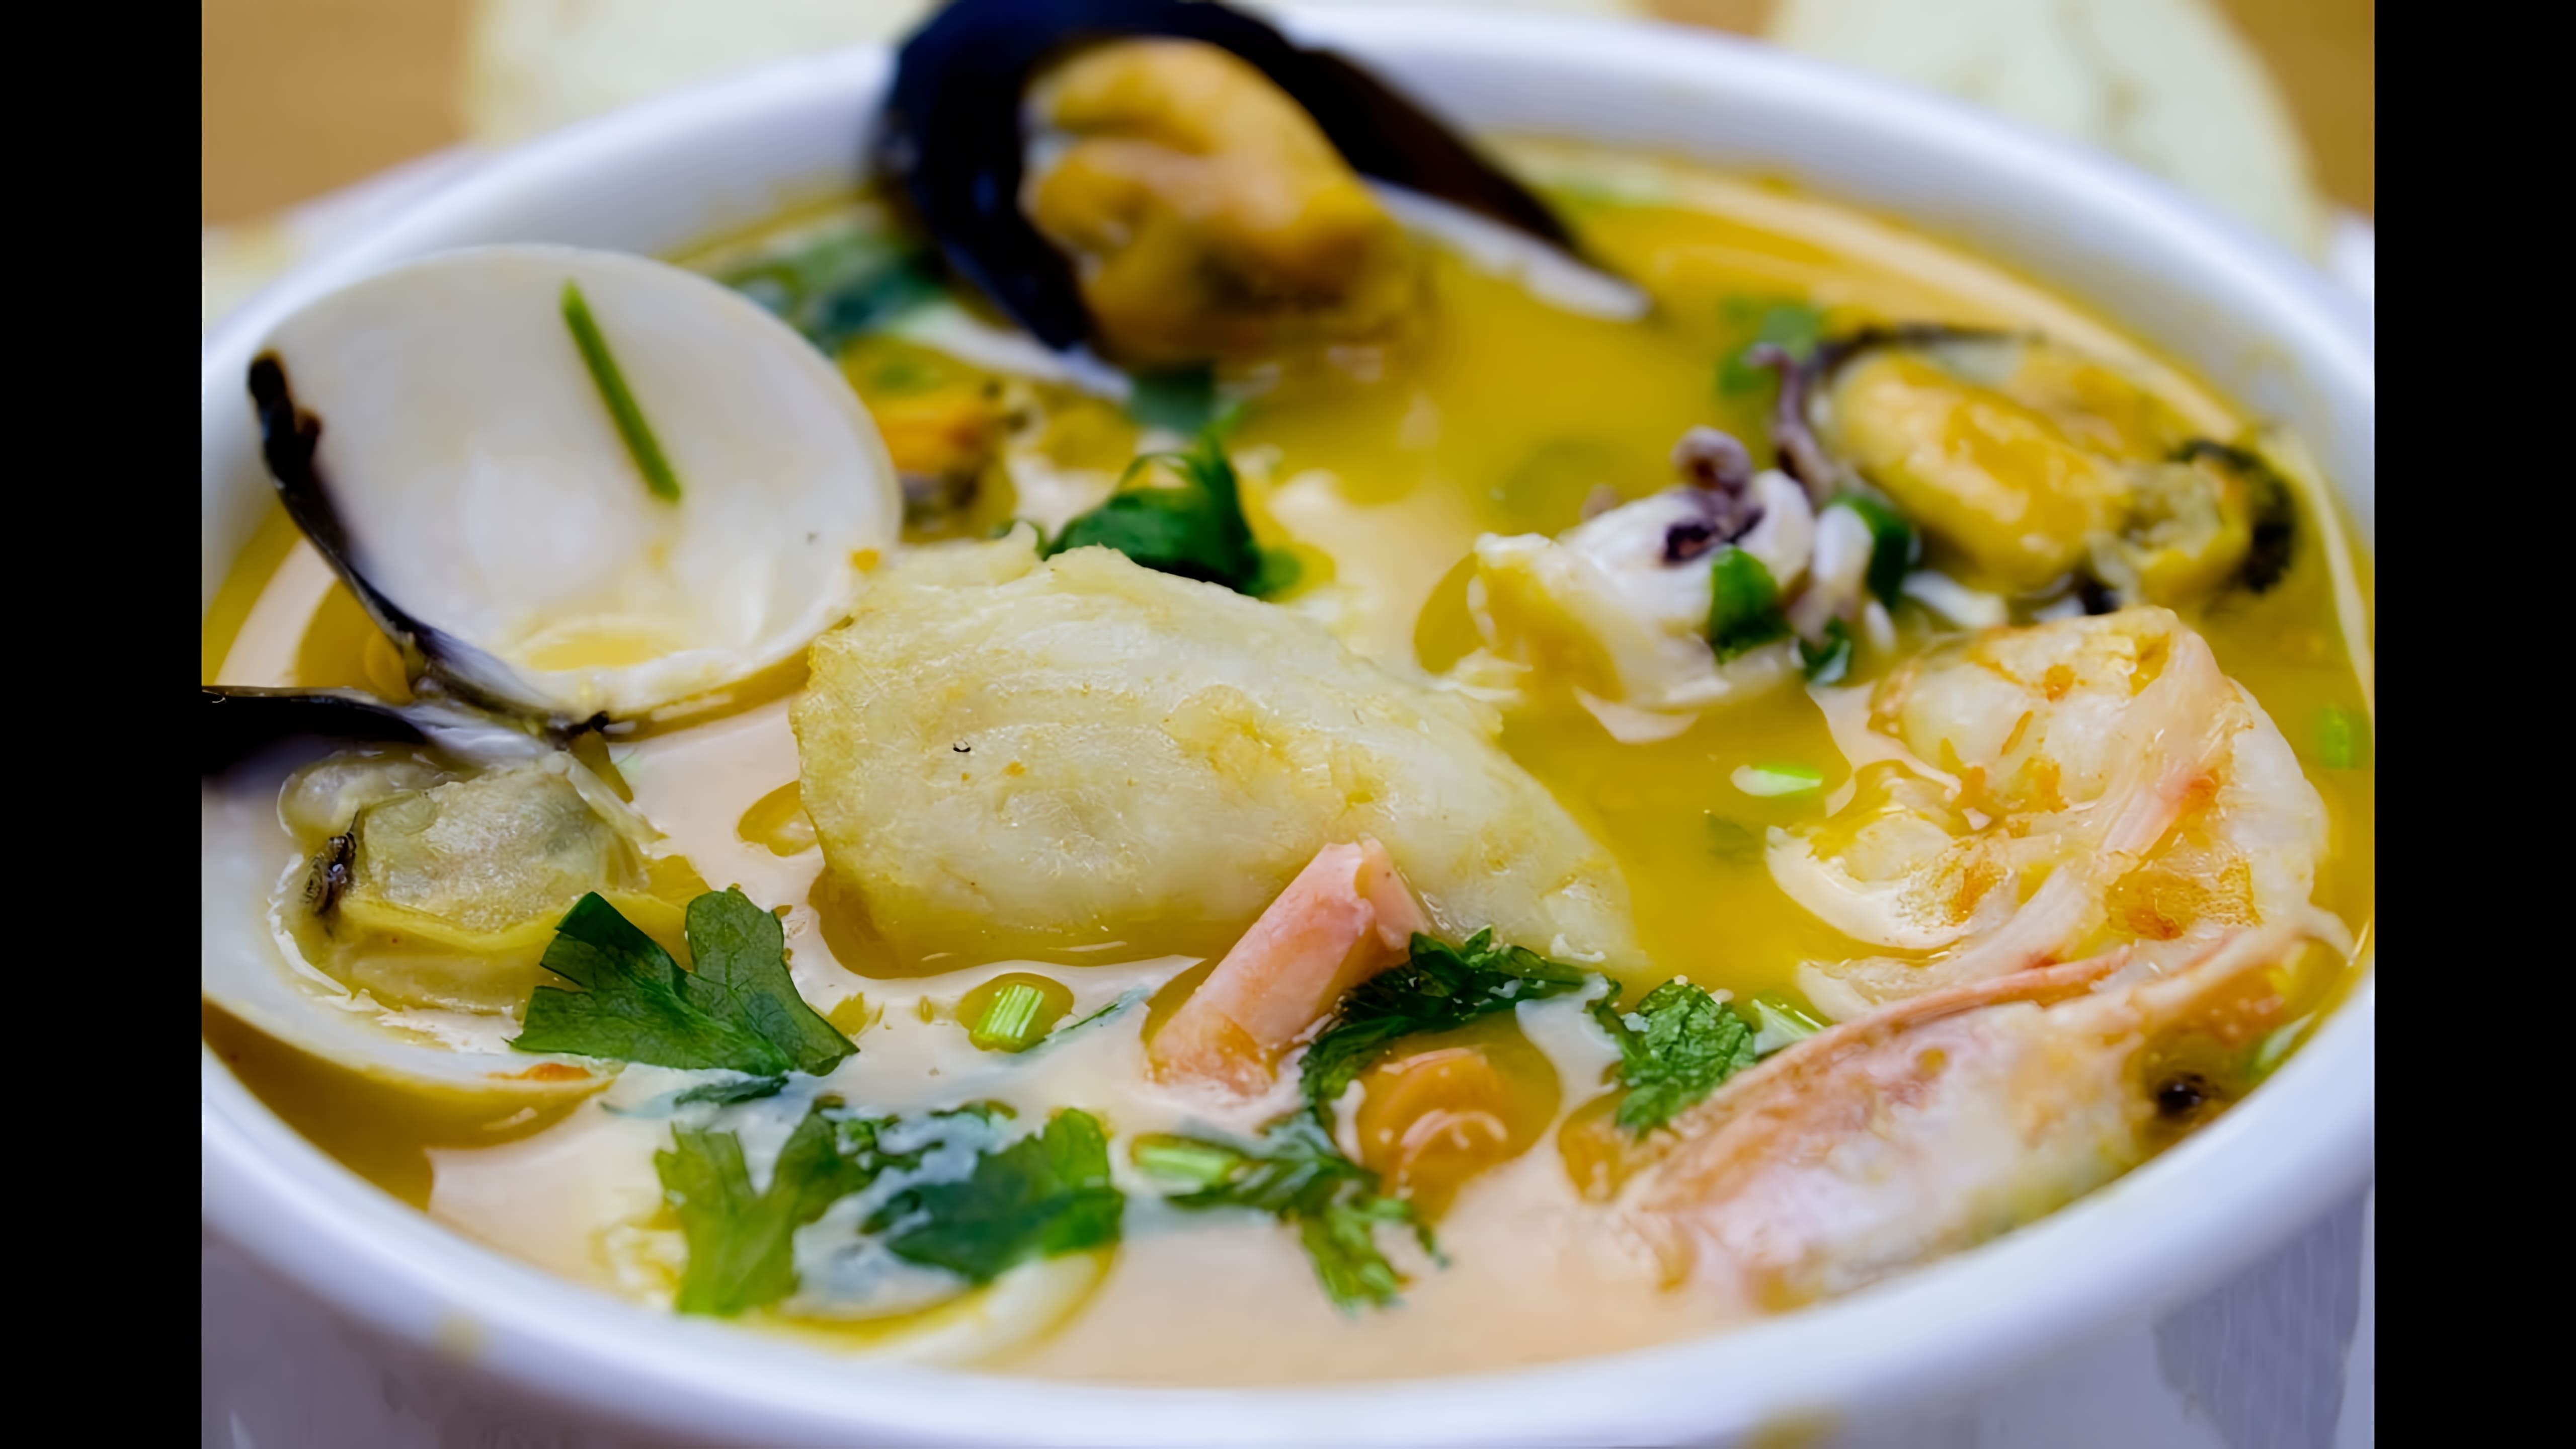 В этом видео демонстрируется процесс приготовления вкусного супа из морепродуктов